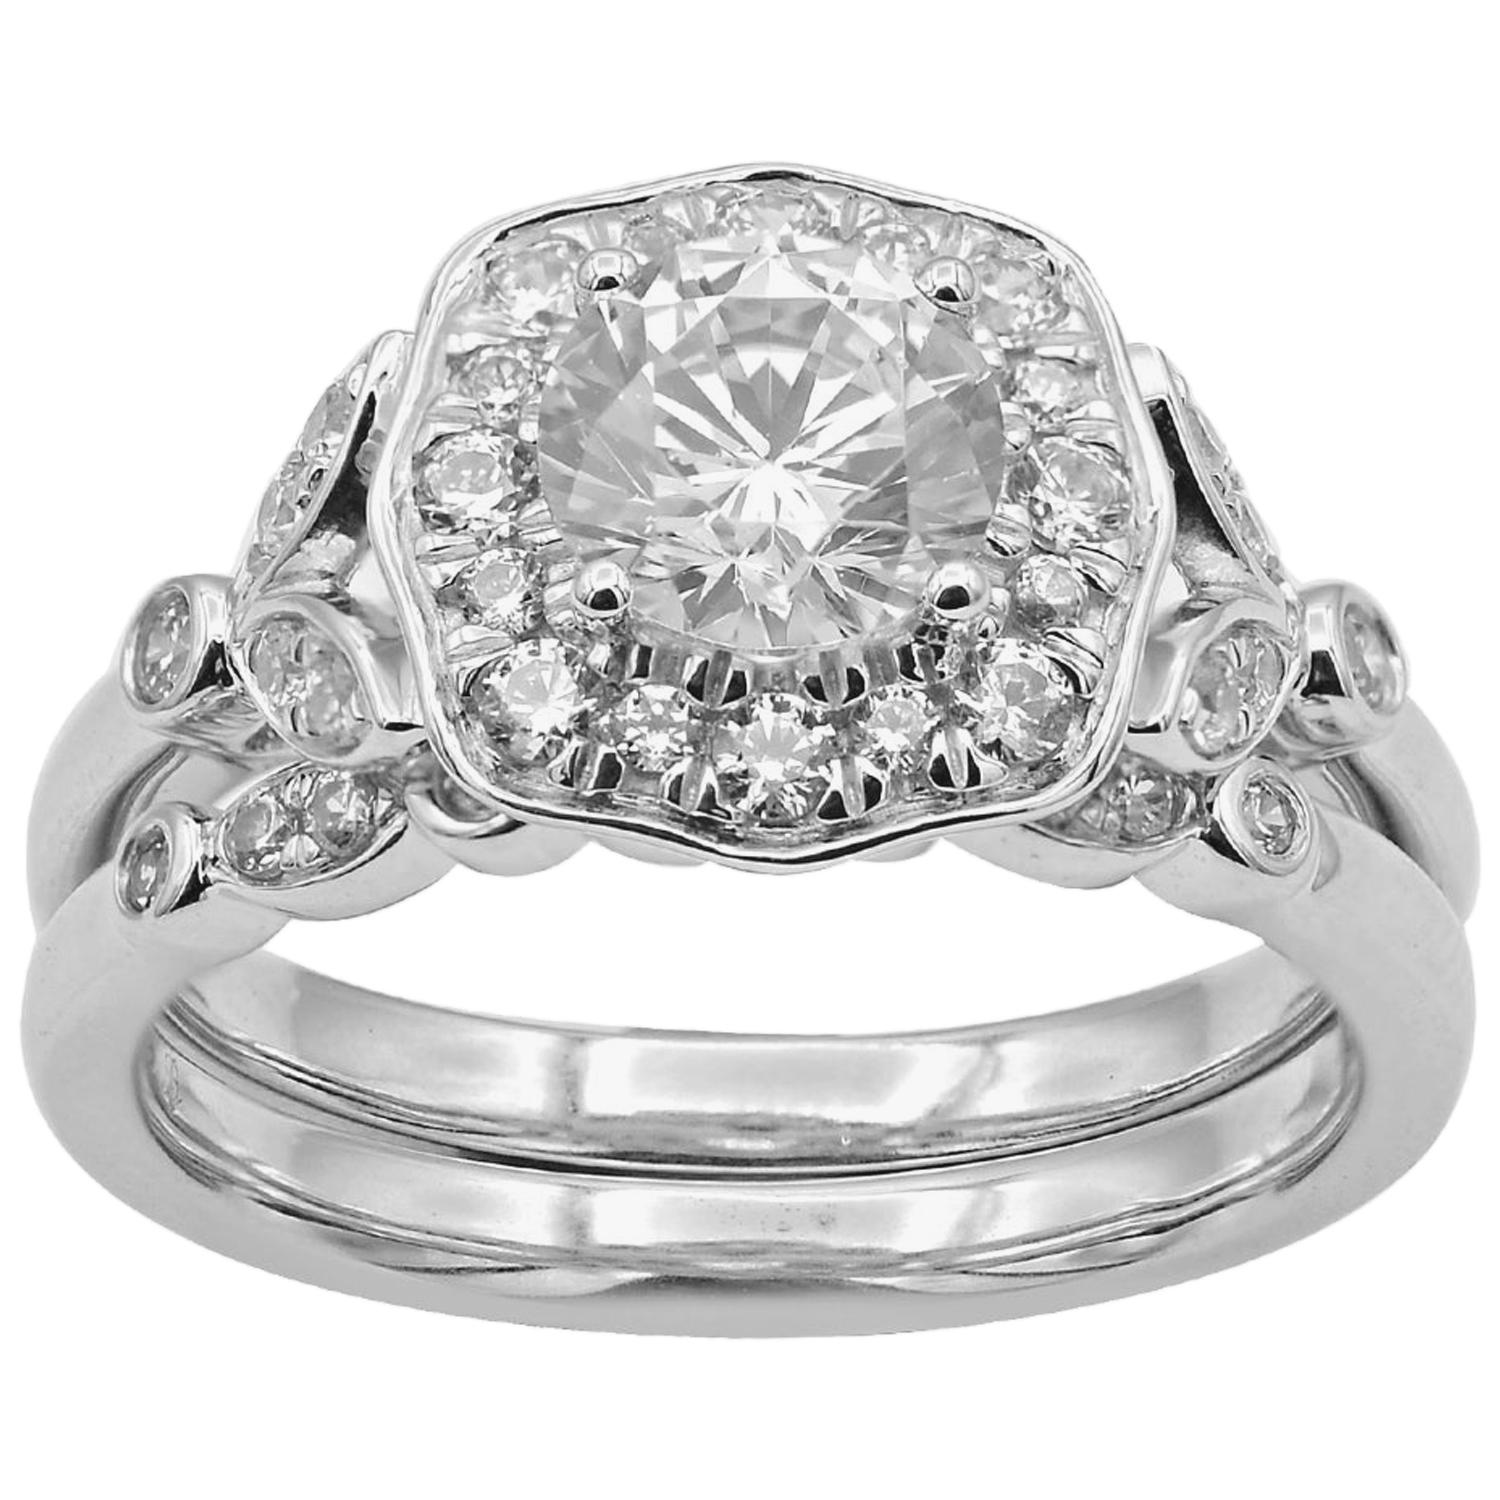 TJD 1.50 Carat Round Diamond 18 Karat White Gold Halo Bridal Ring Set